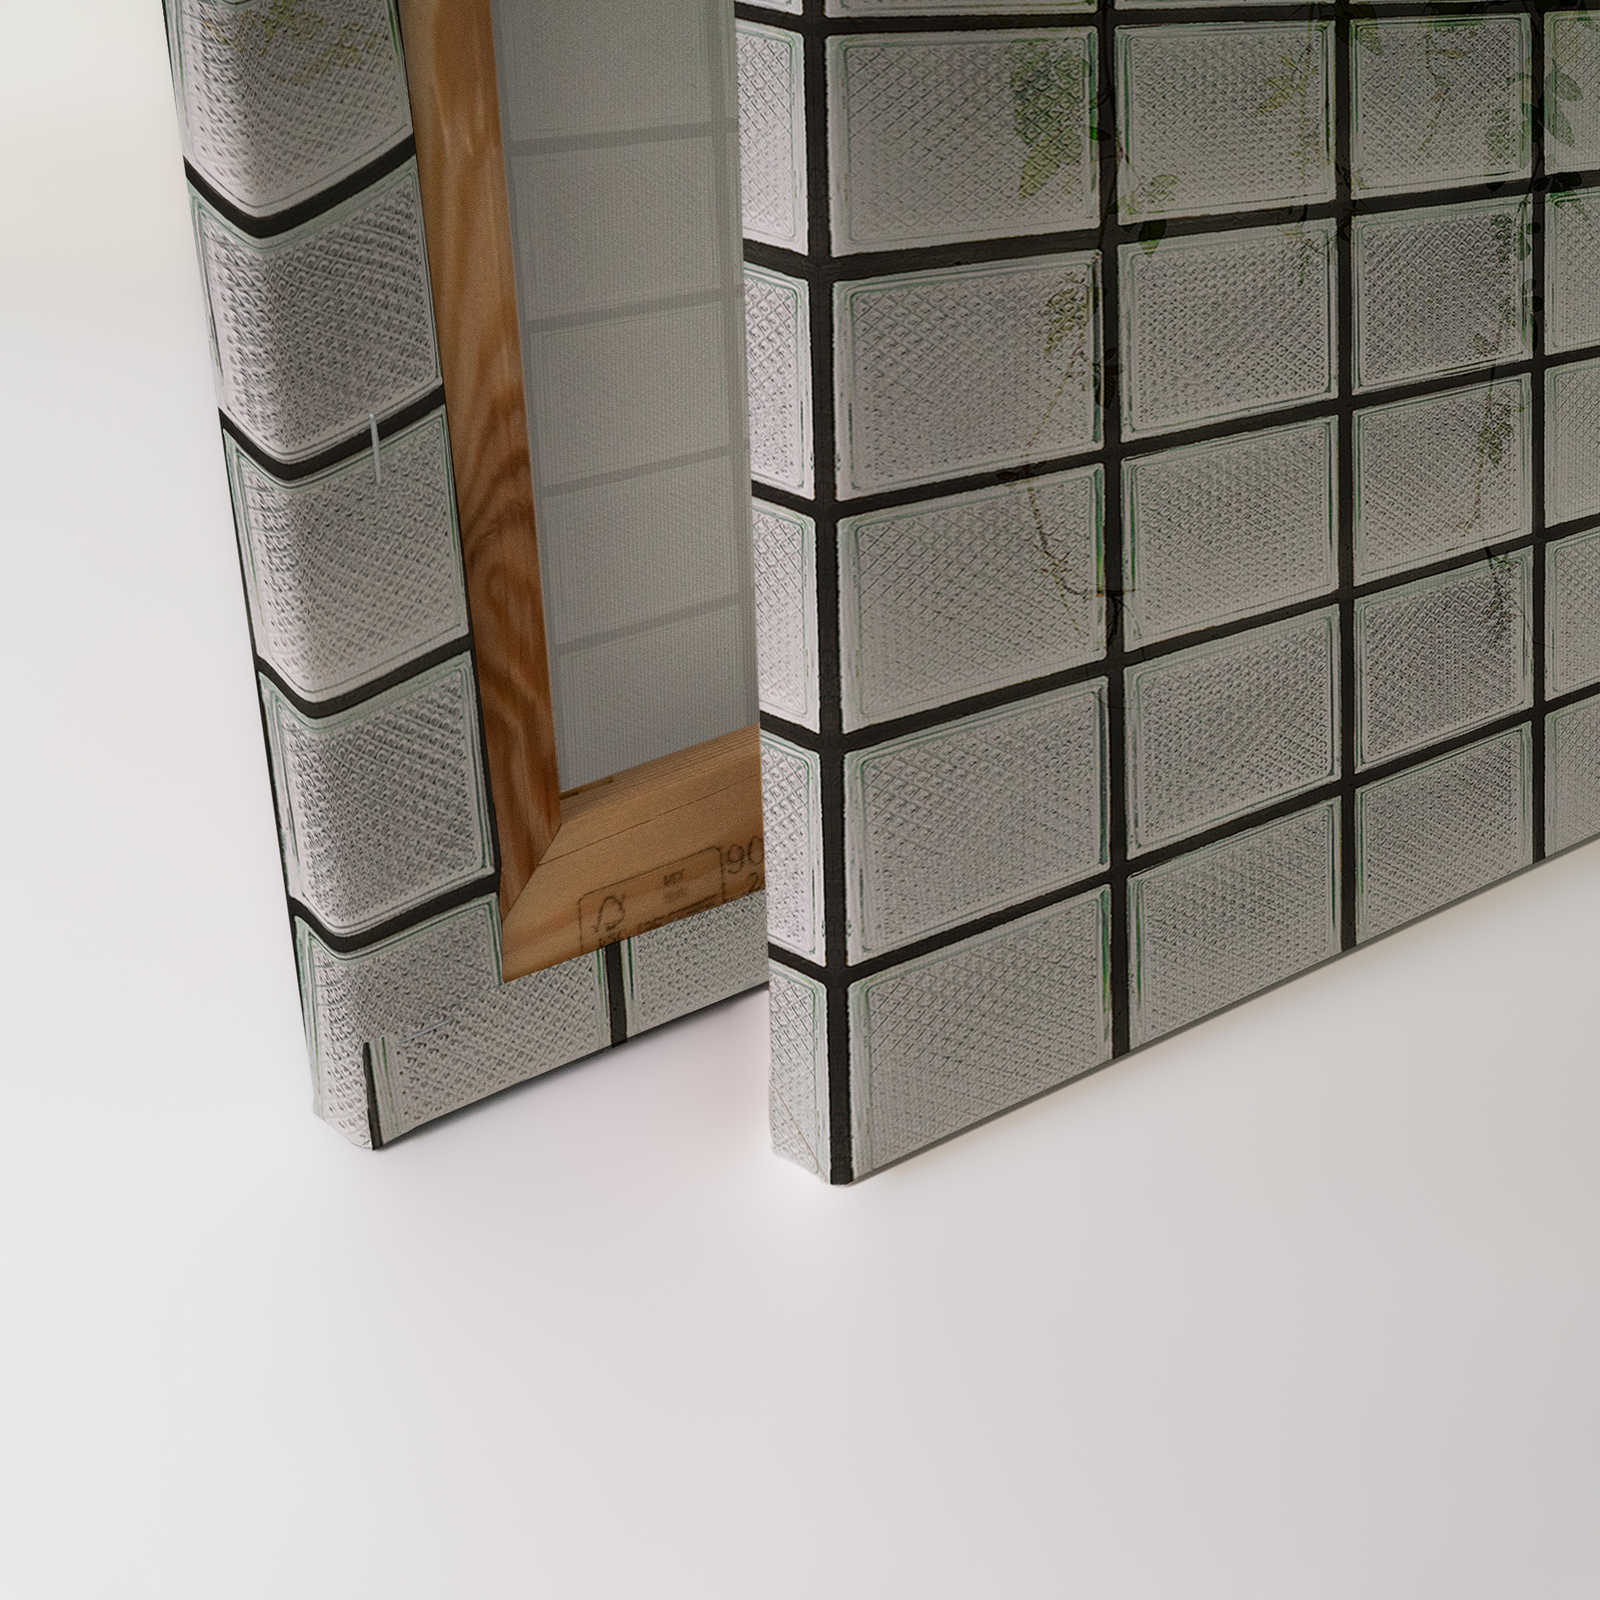             Green House 2 - Invernadero Lienzo pintura Hojas y ladrillos de vidrio - 1,20 m x 0,80 m
        